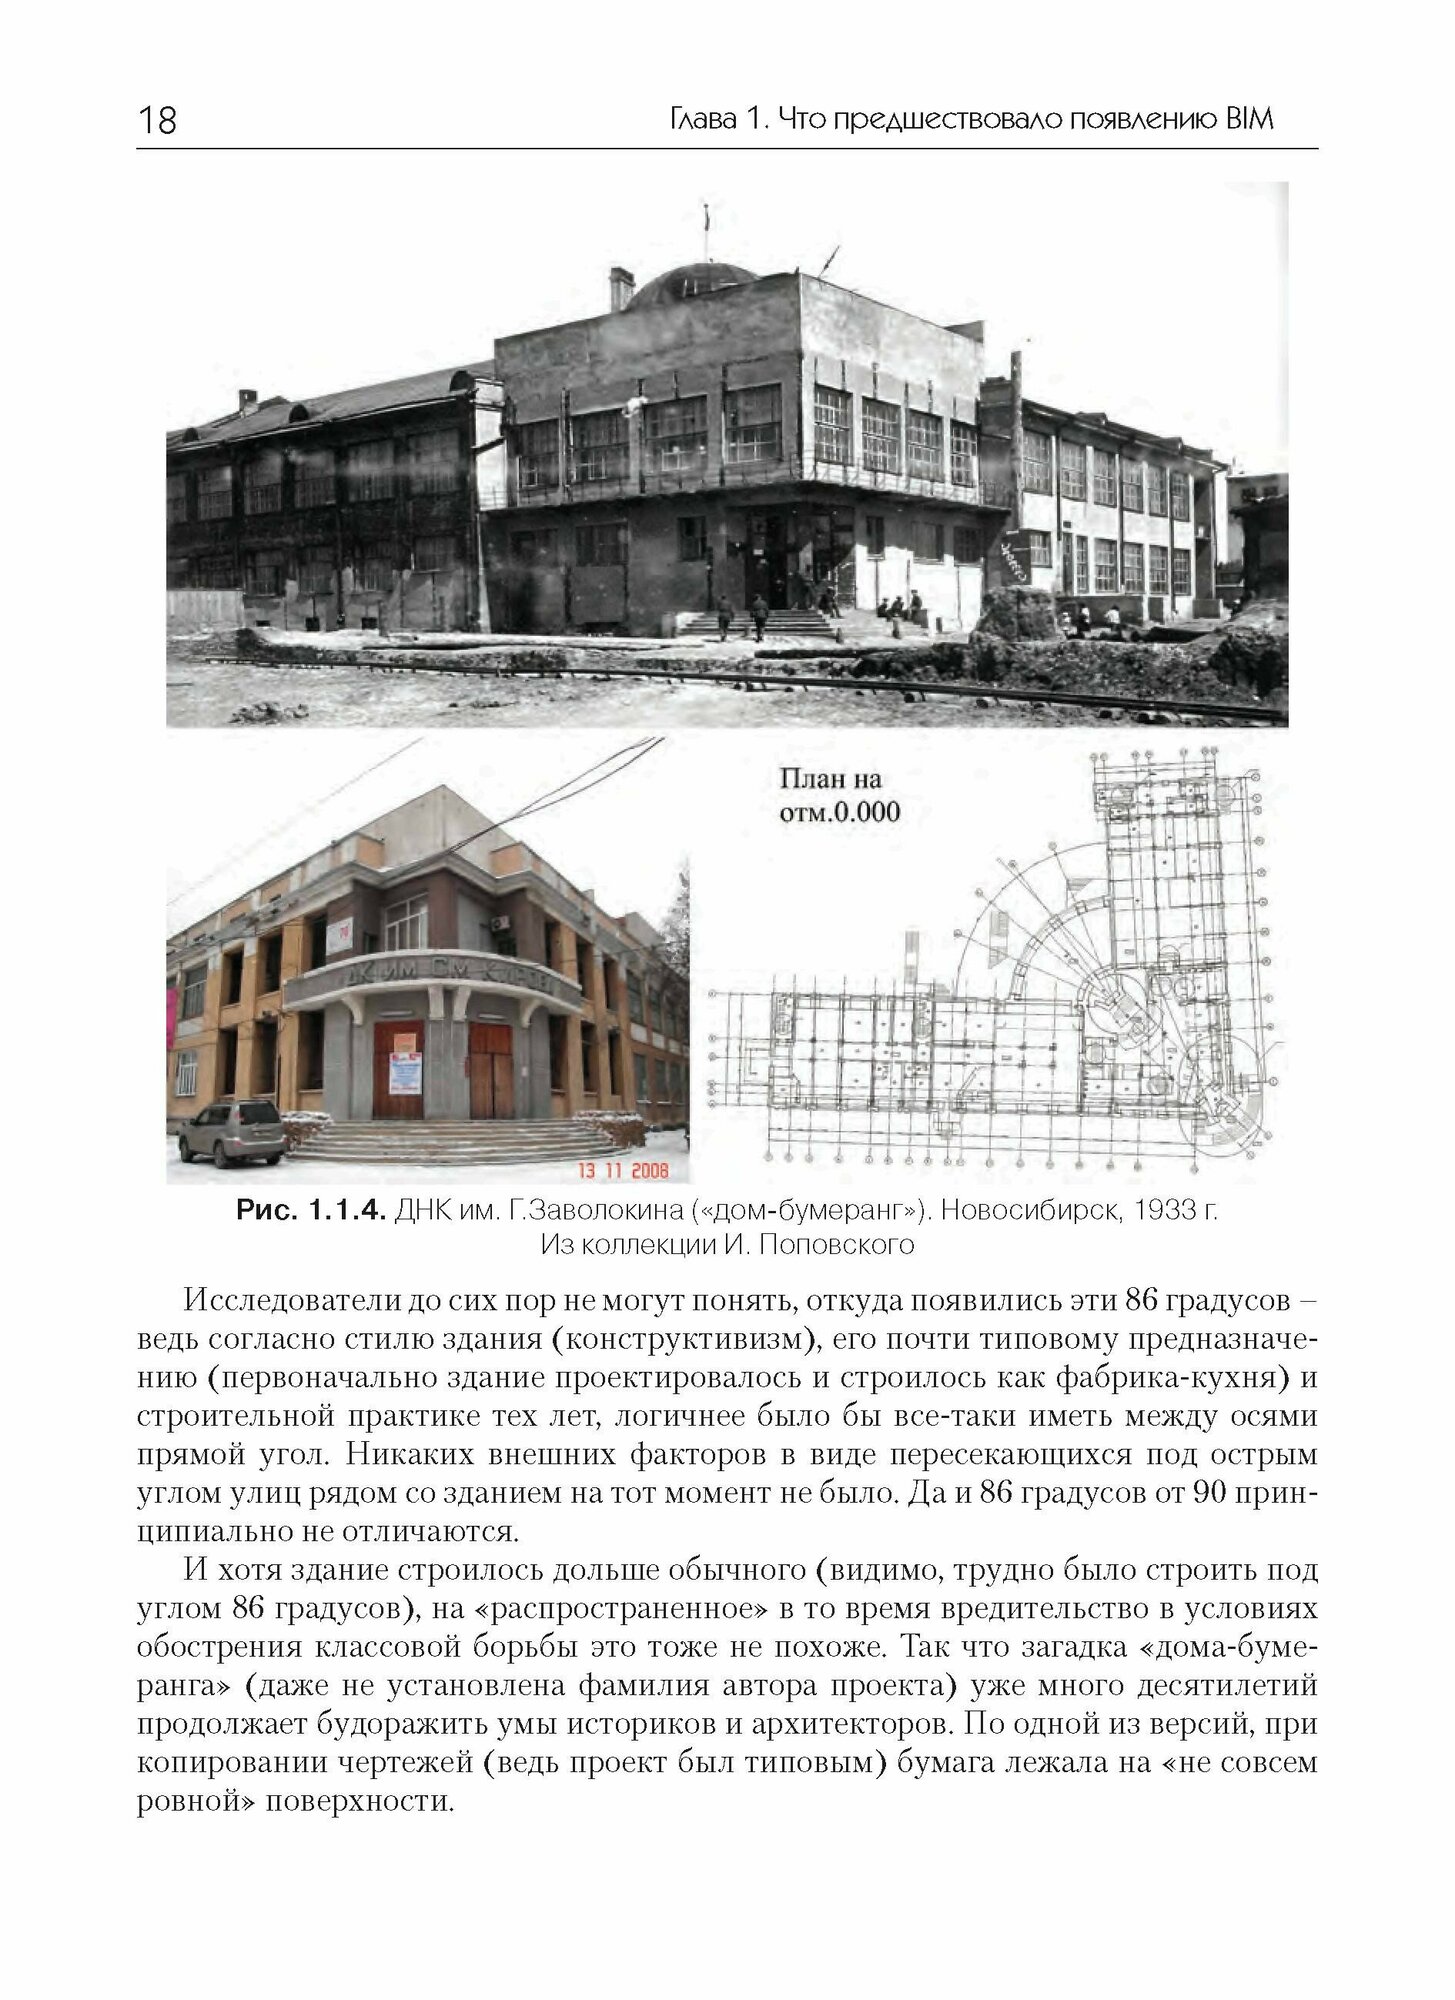 Технология BIM. Суть и особенности внедрения информационного моделирования зданий - фото №4